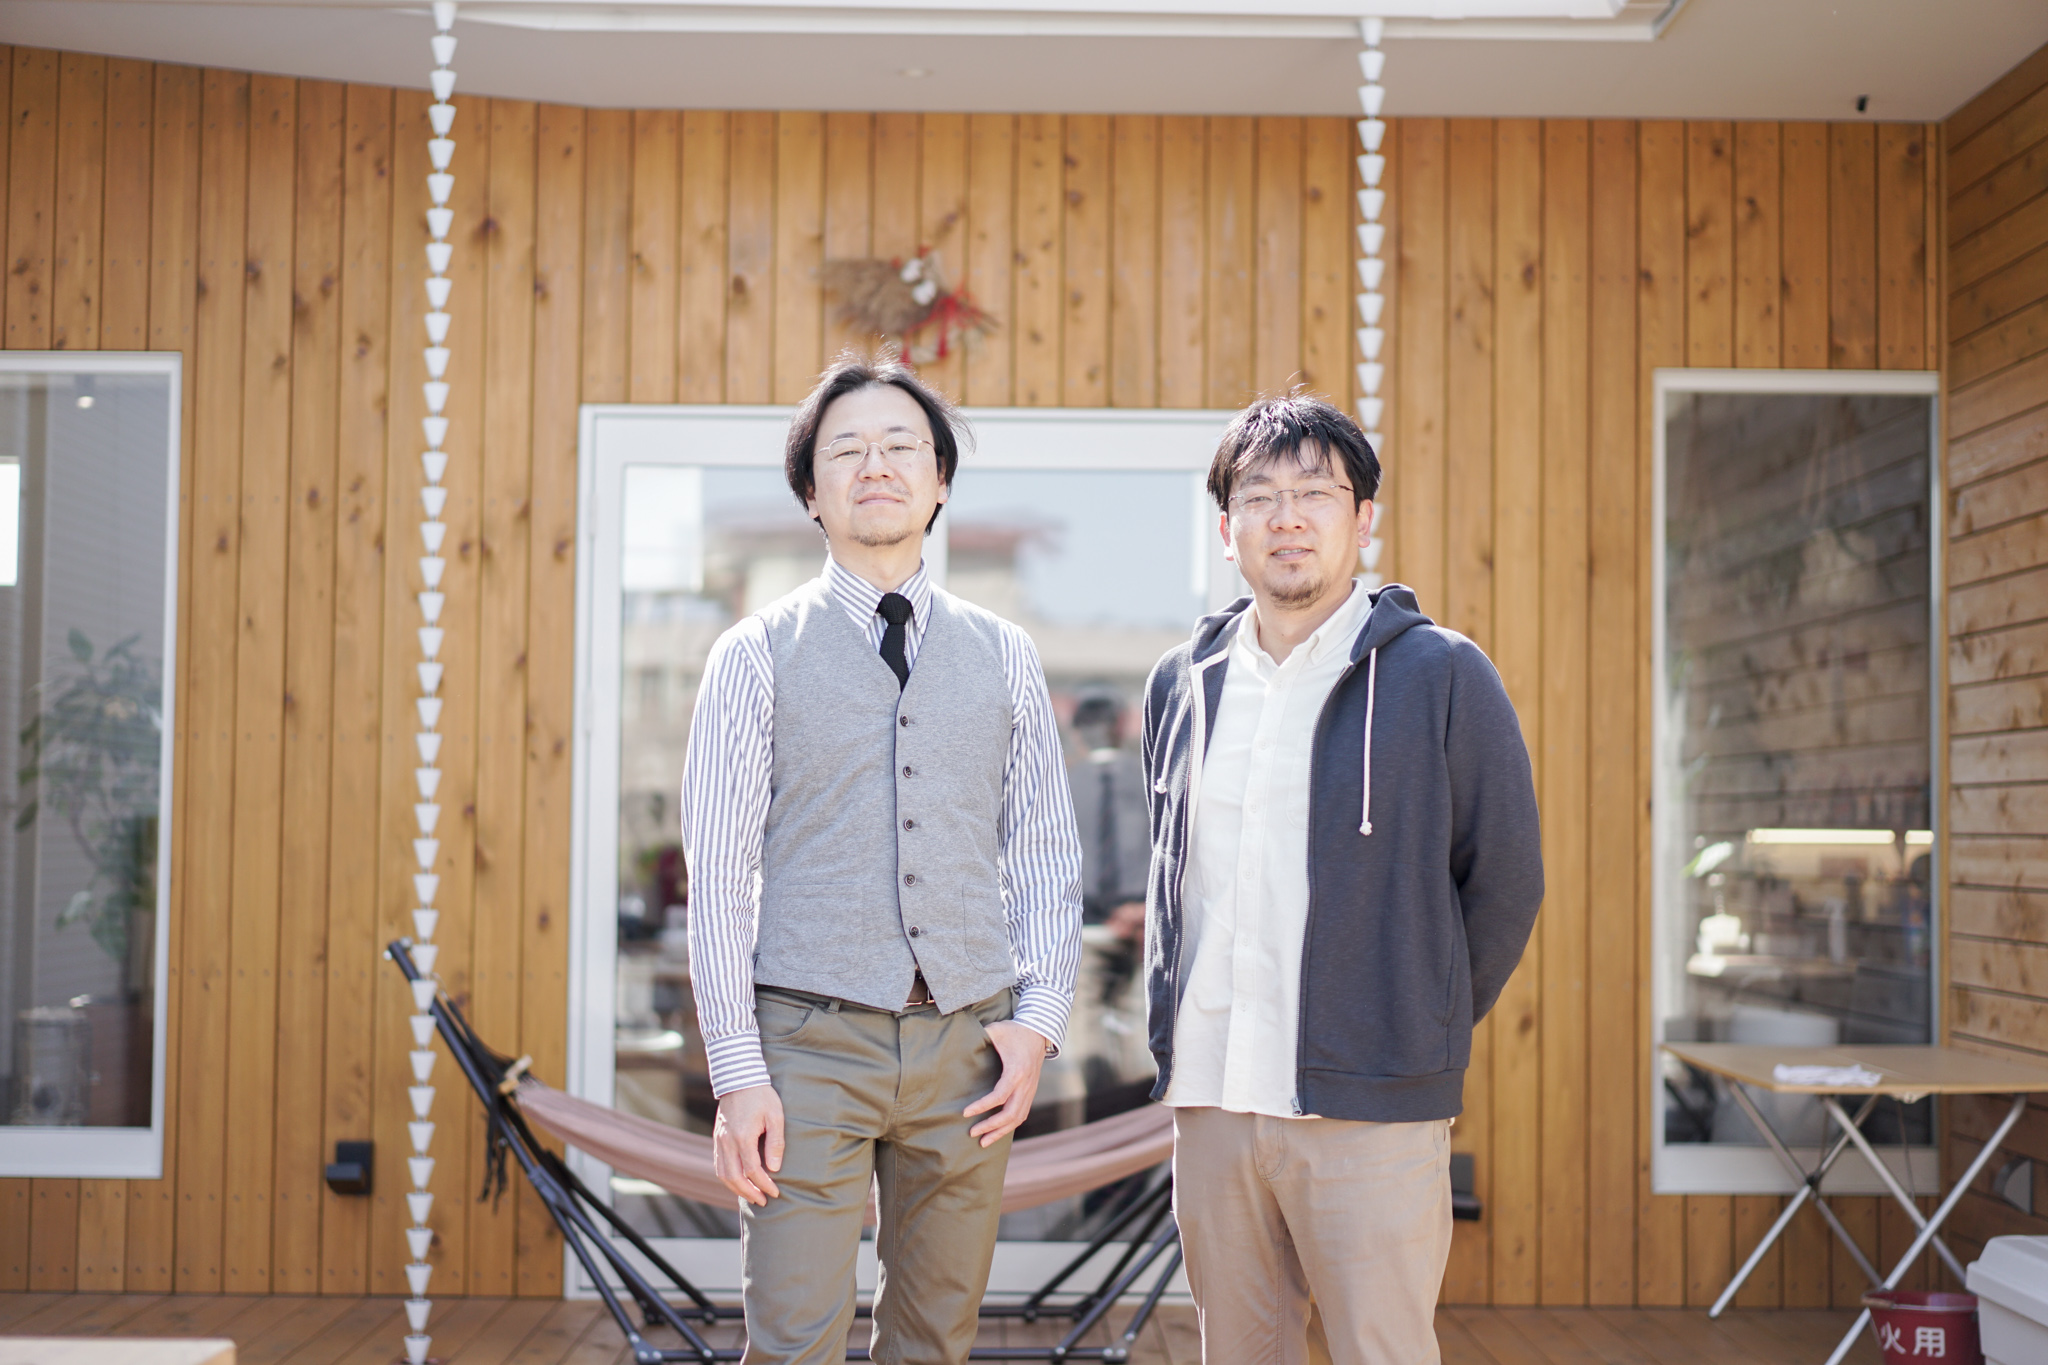 つばめソリューション代表の石川慎太郎さん（左）ととちぎユースサポーターズネットワーク代表理事の岩井俊宗さん（右）